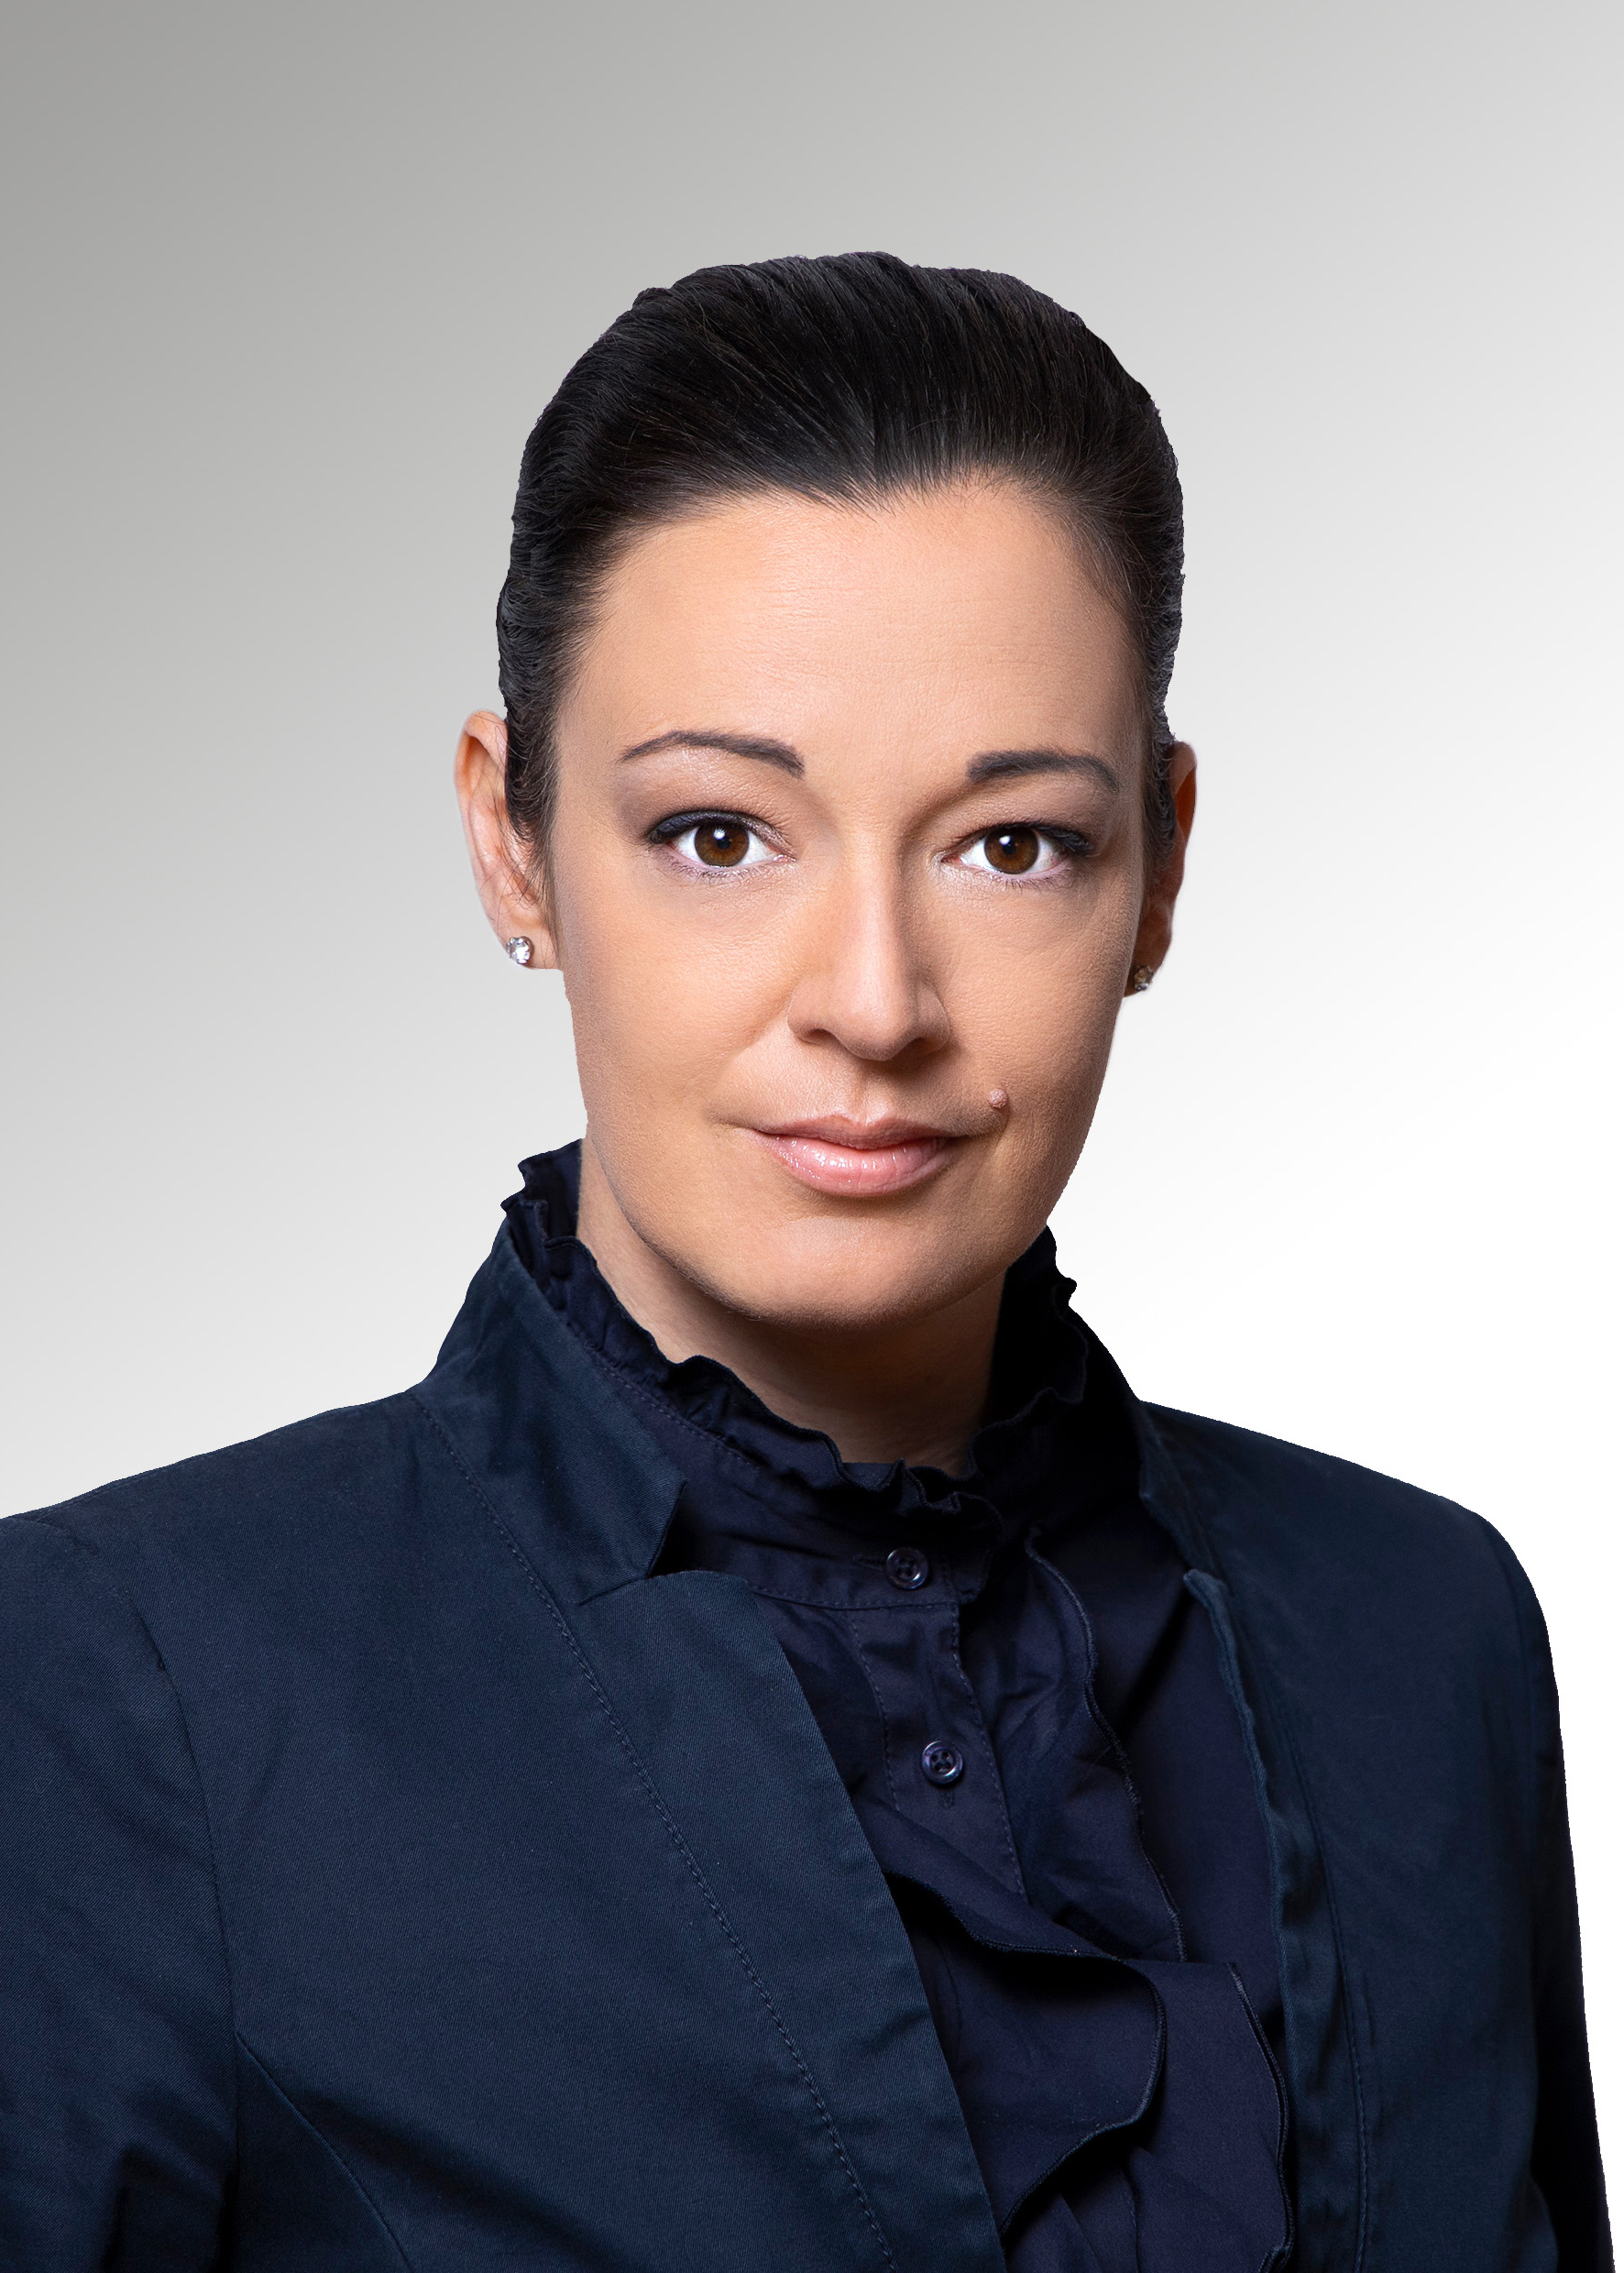 Julia Gülden-Zeisberger